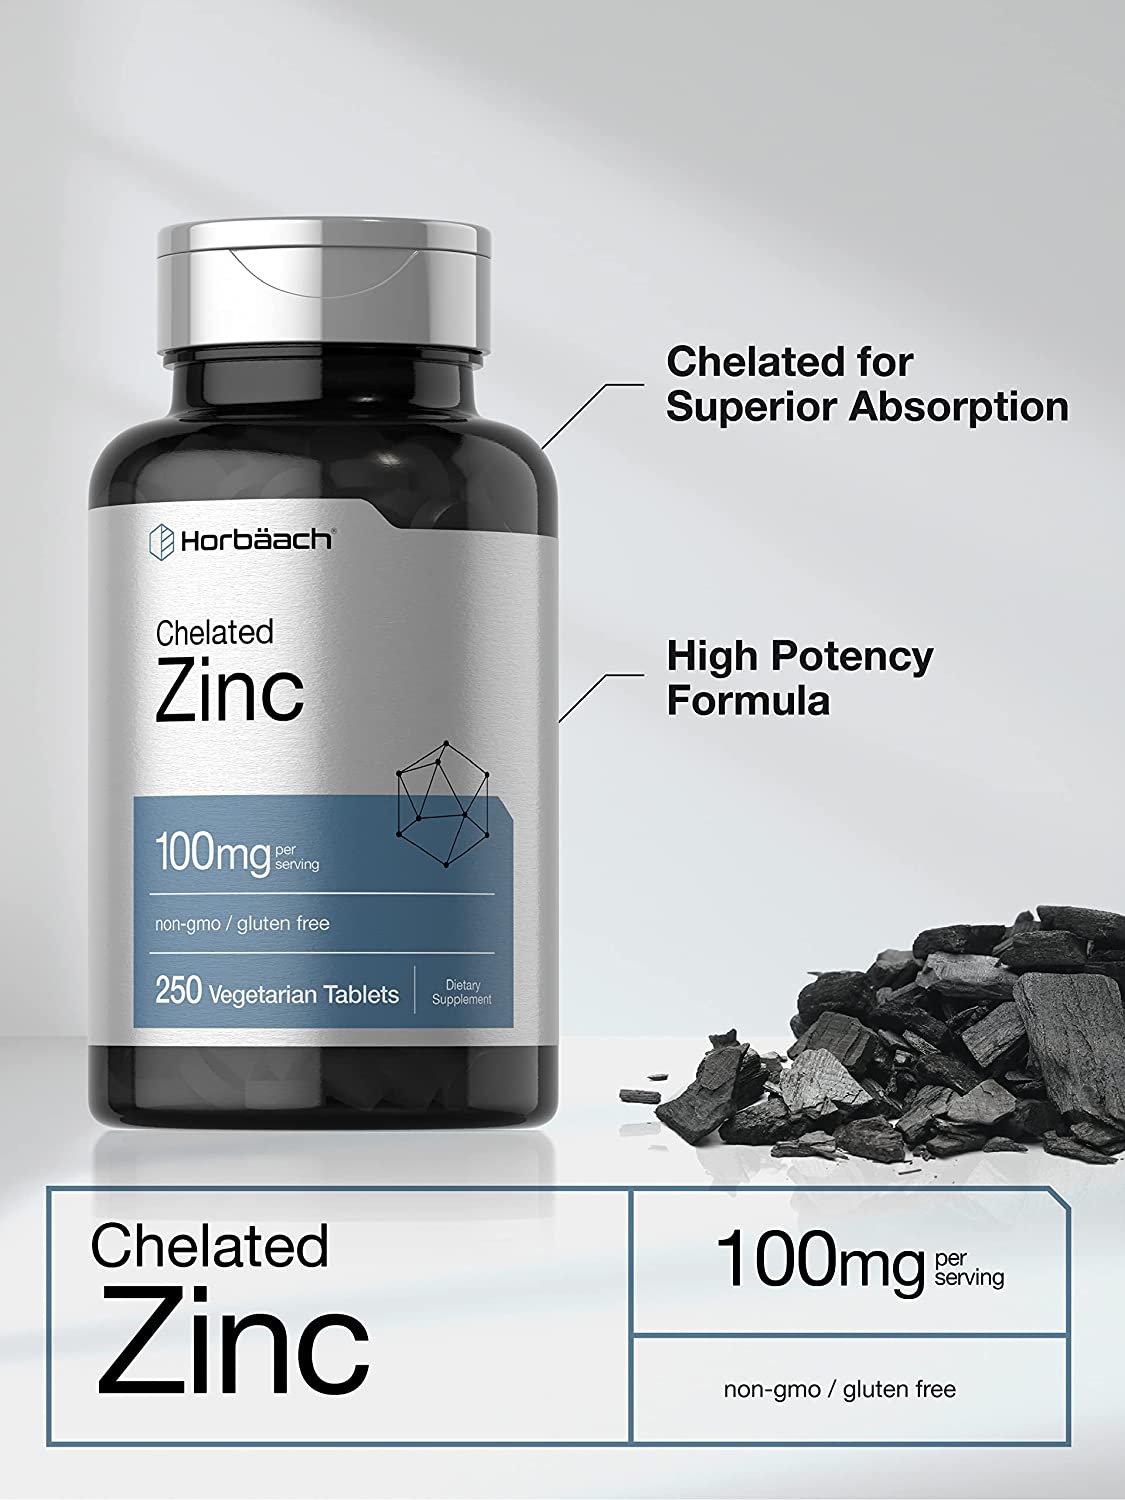 Horbaach Chelated Zinc Supplement - 250 Tablet